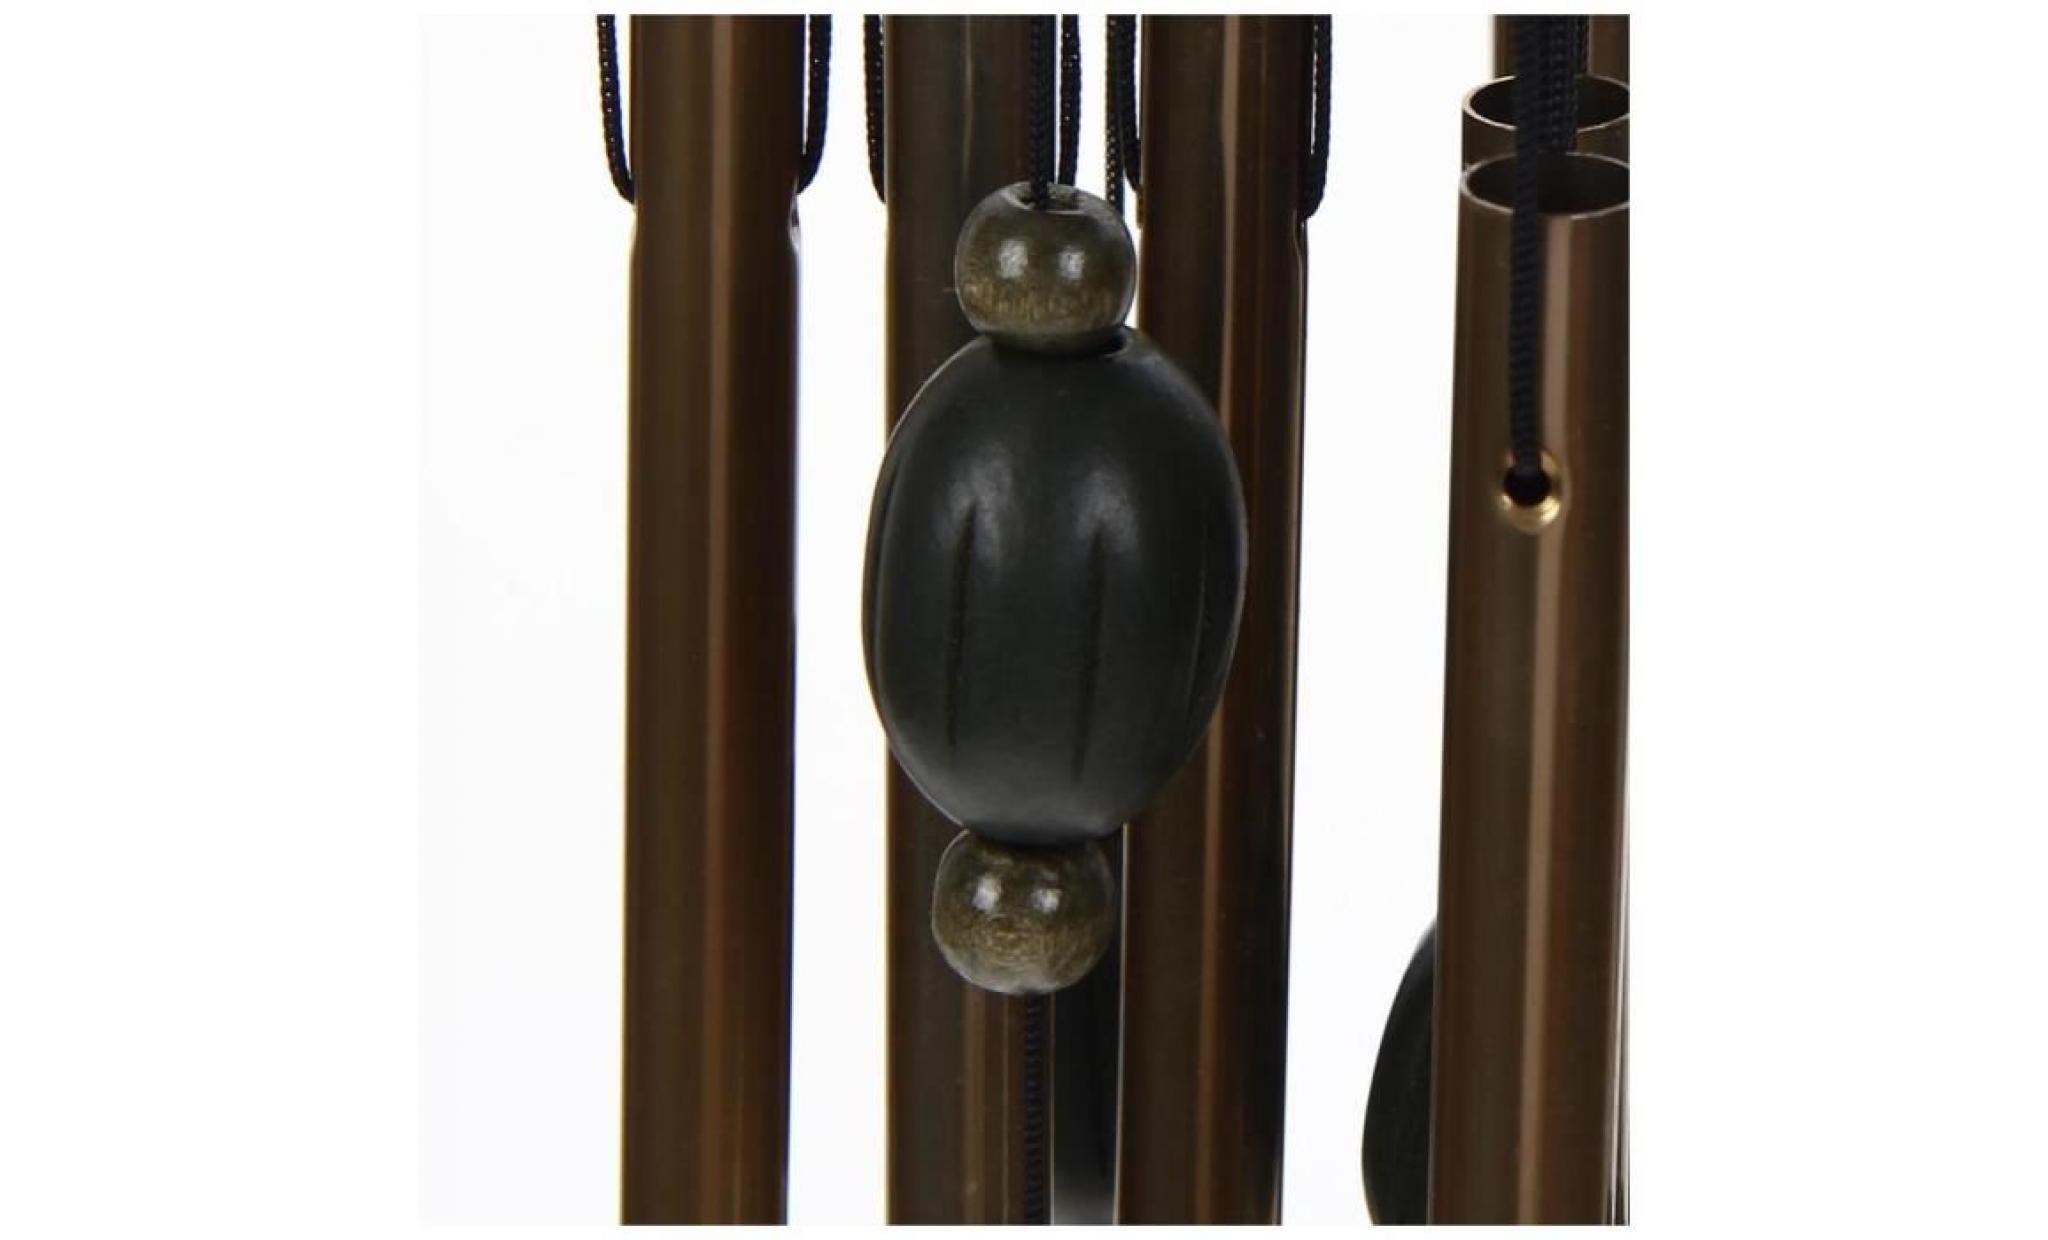 carillon bronze 12 tubes cloches métalliques vent jardin extérieur carillon pendaison cadeau décoration pas cher